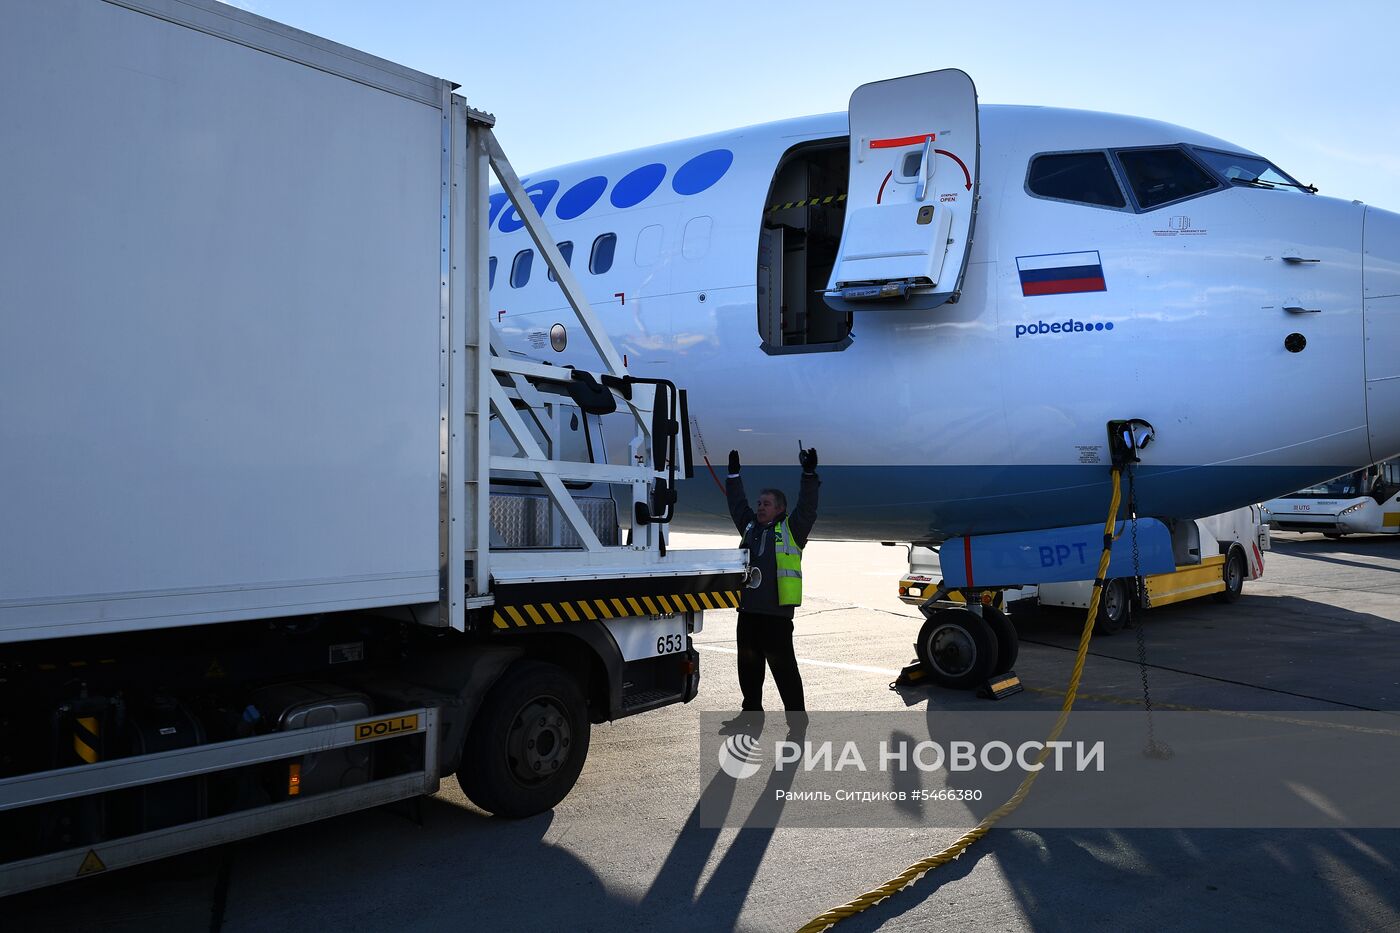 Обслуживание самолета авиакомпании «Победа» в аэропорту Внуково